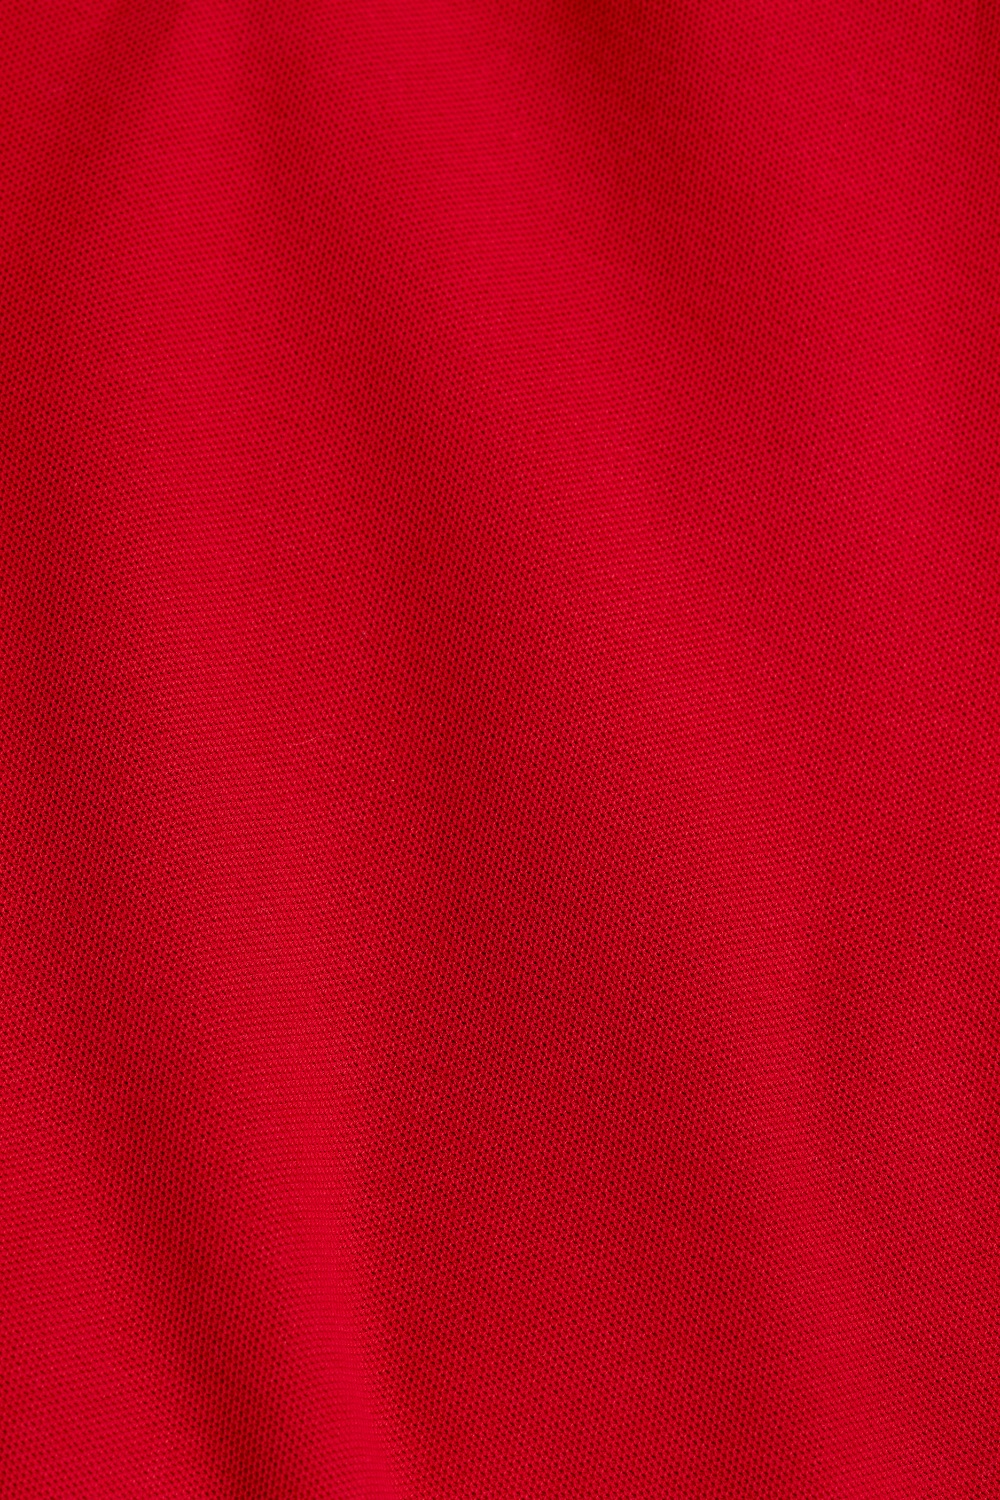 MKH Polo Damen Rot Detail Stoff